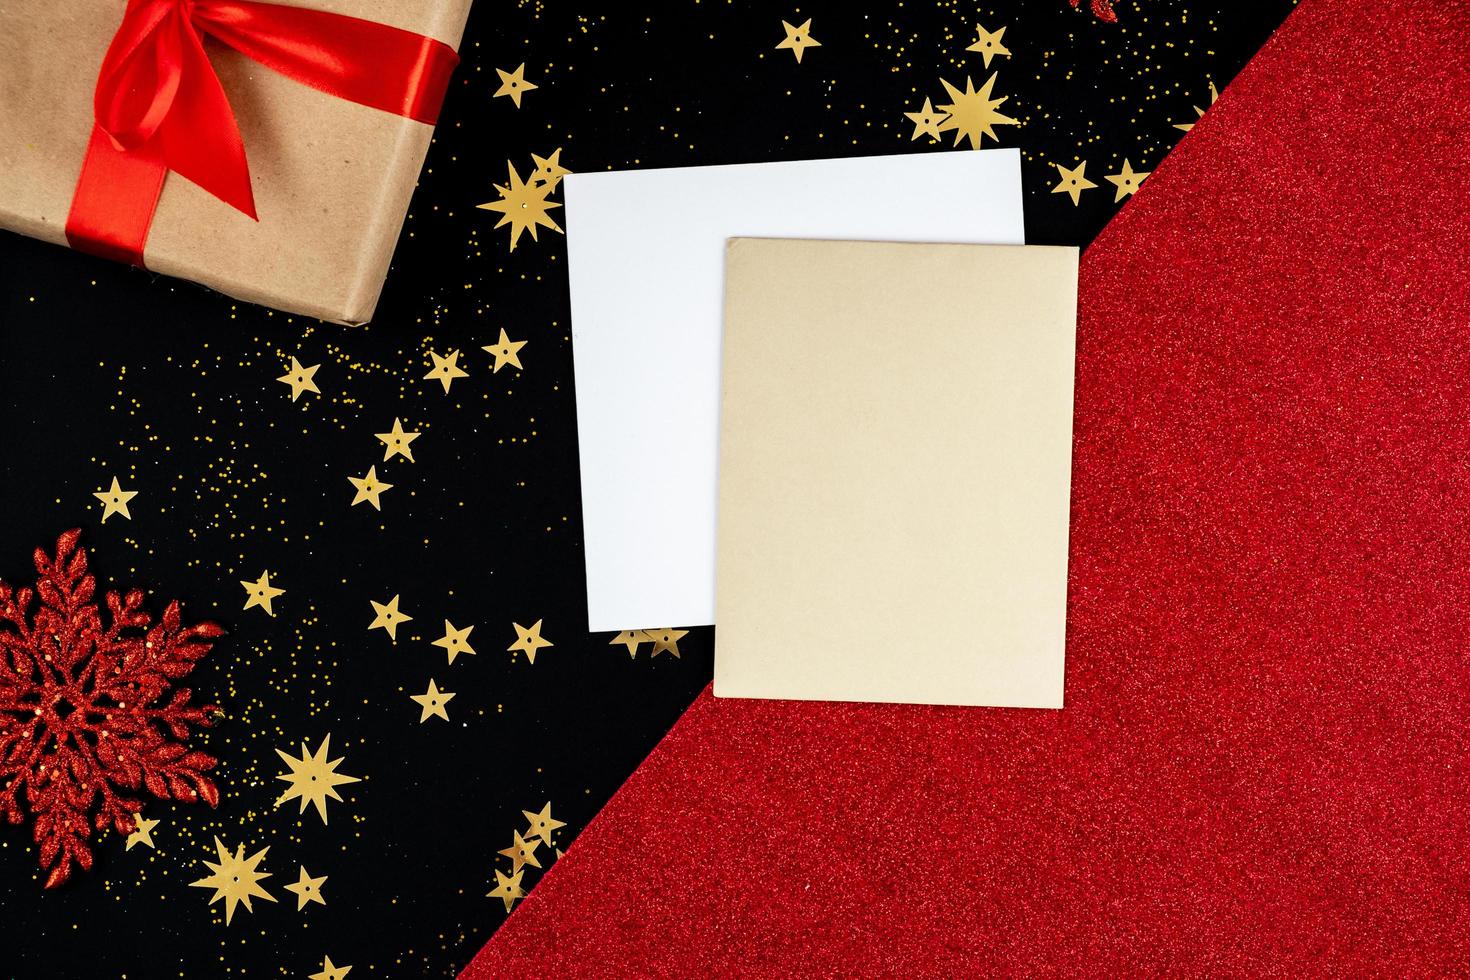 sobre un fondo festivo, rojo-negro, de año nuevo hay tarjetas de felicitación y un regalo foto